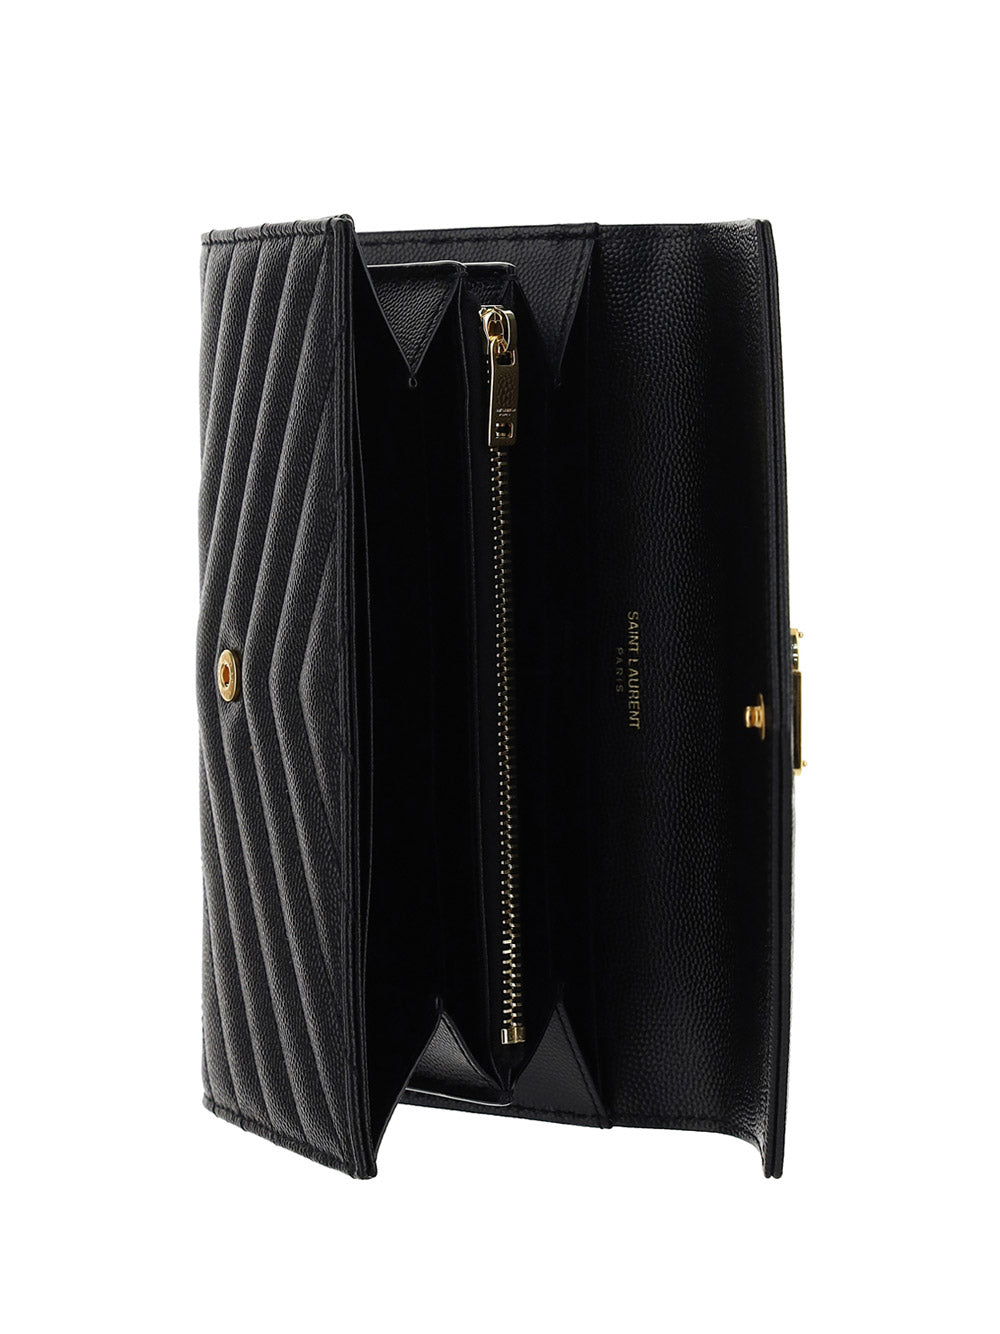 YSL Dark Beige Matelasse Leather Flap Wallet – Maidenlane Designer